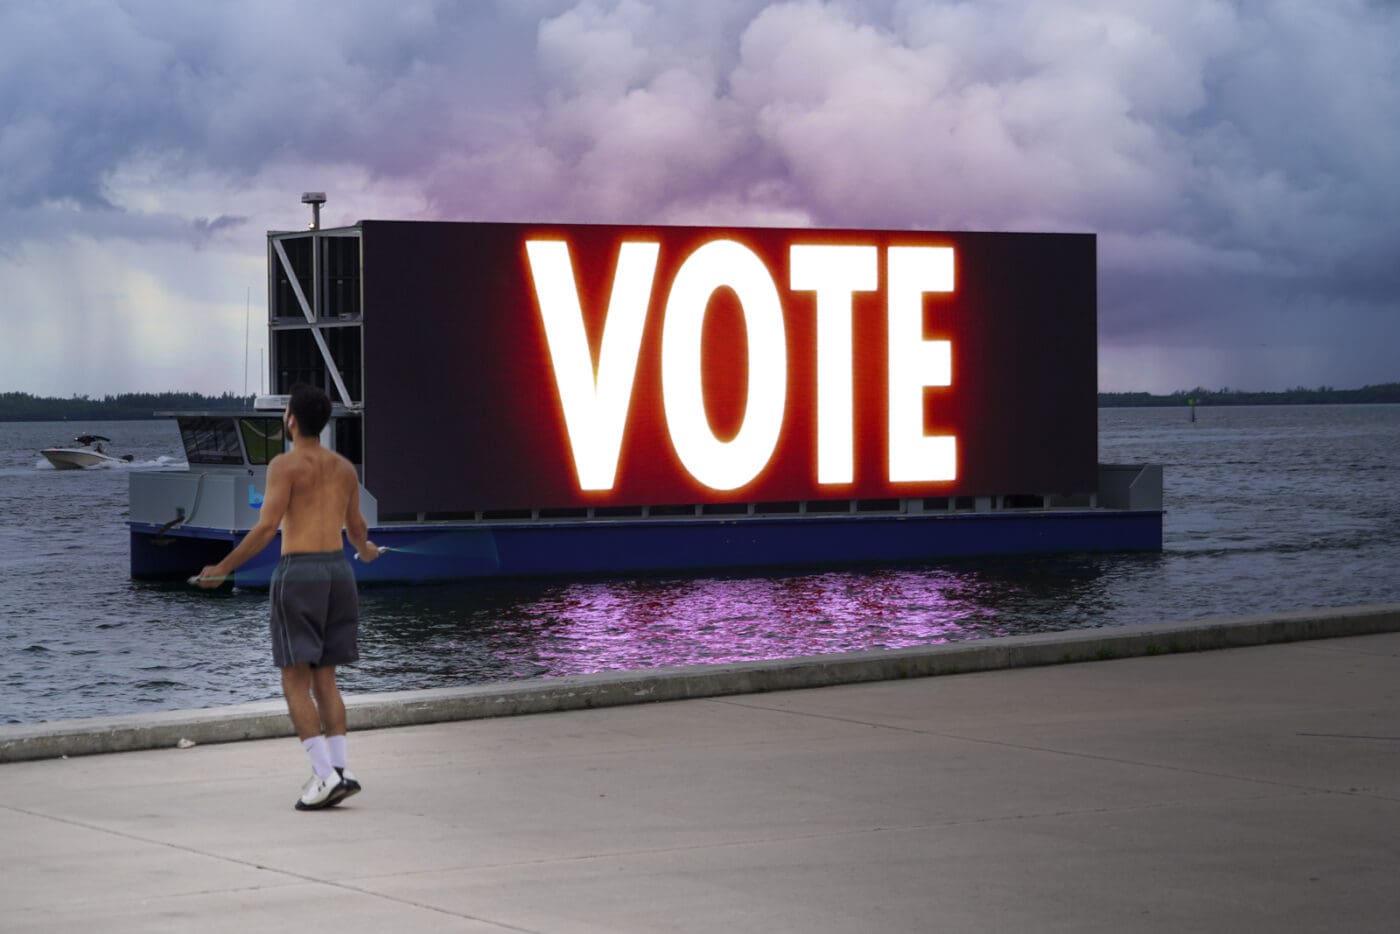 VOTE advertisement on a billboard